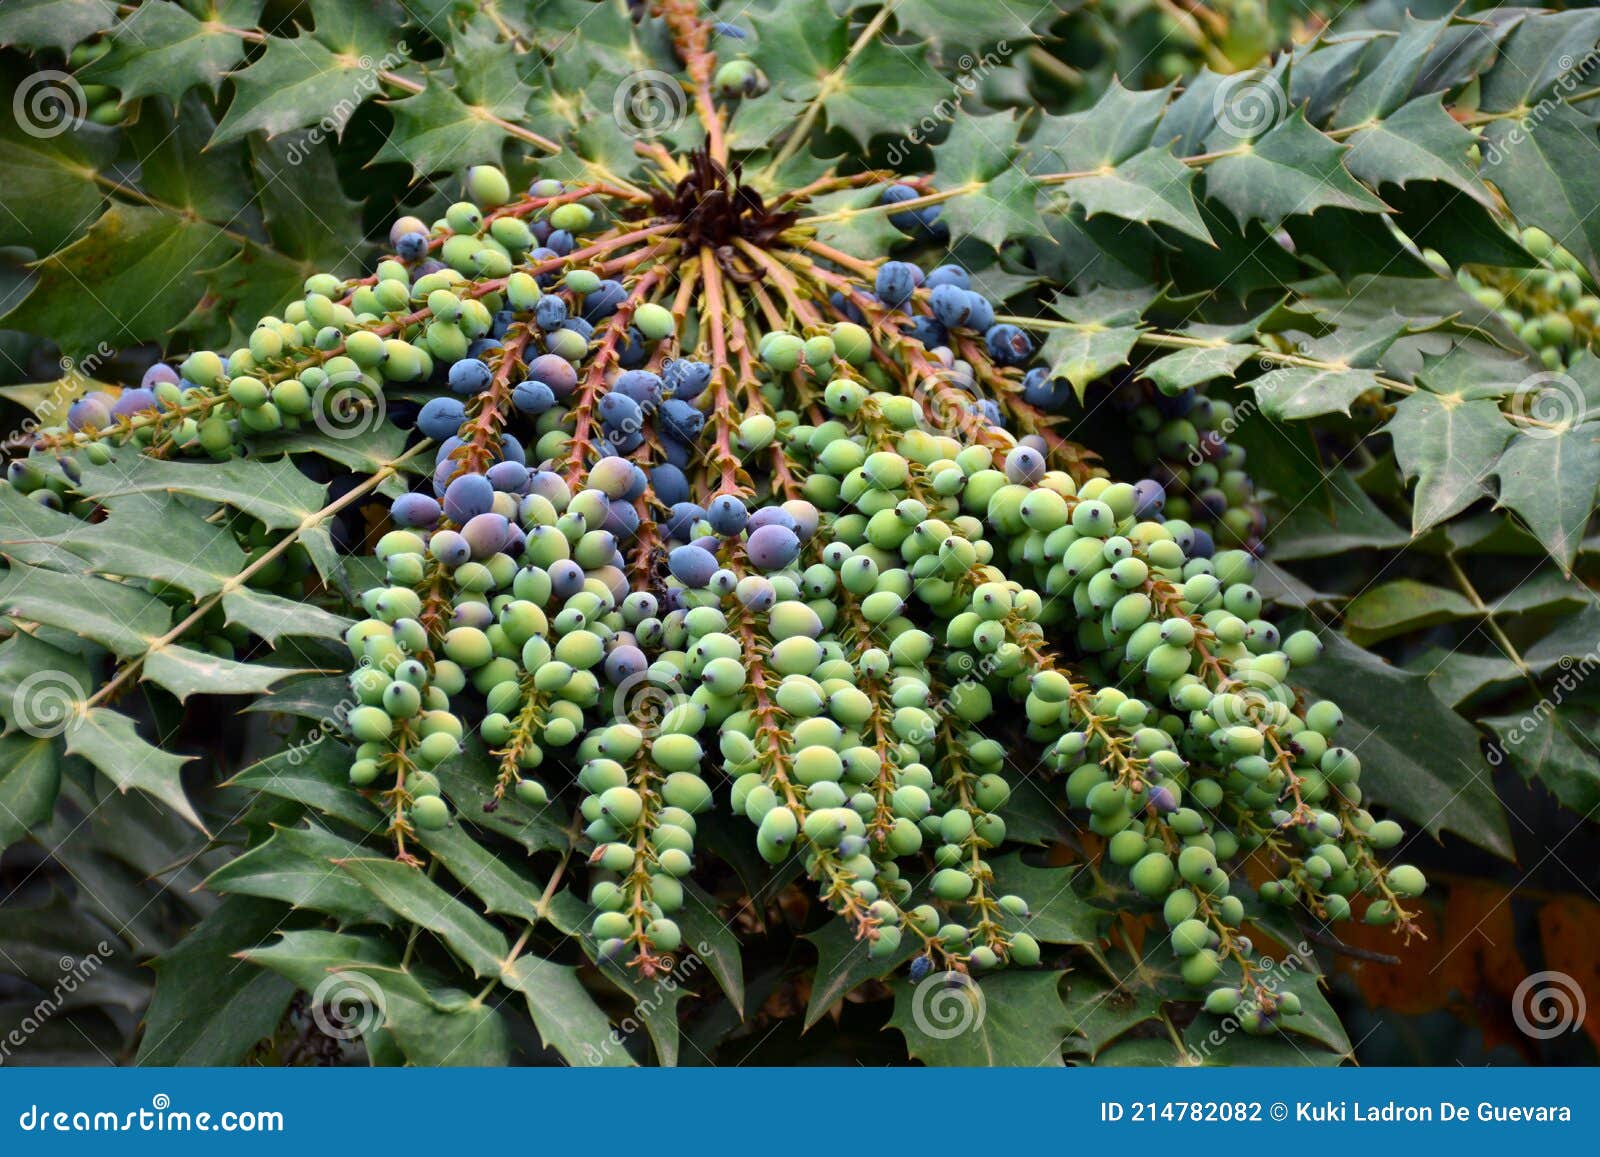 berberis aquifolium fruits